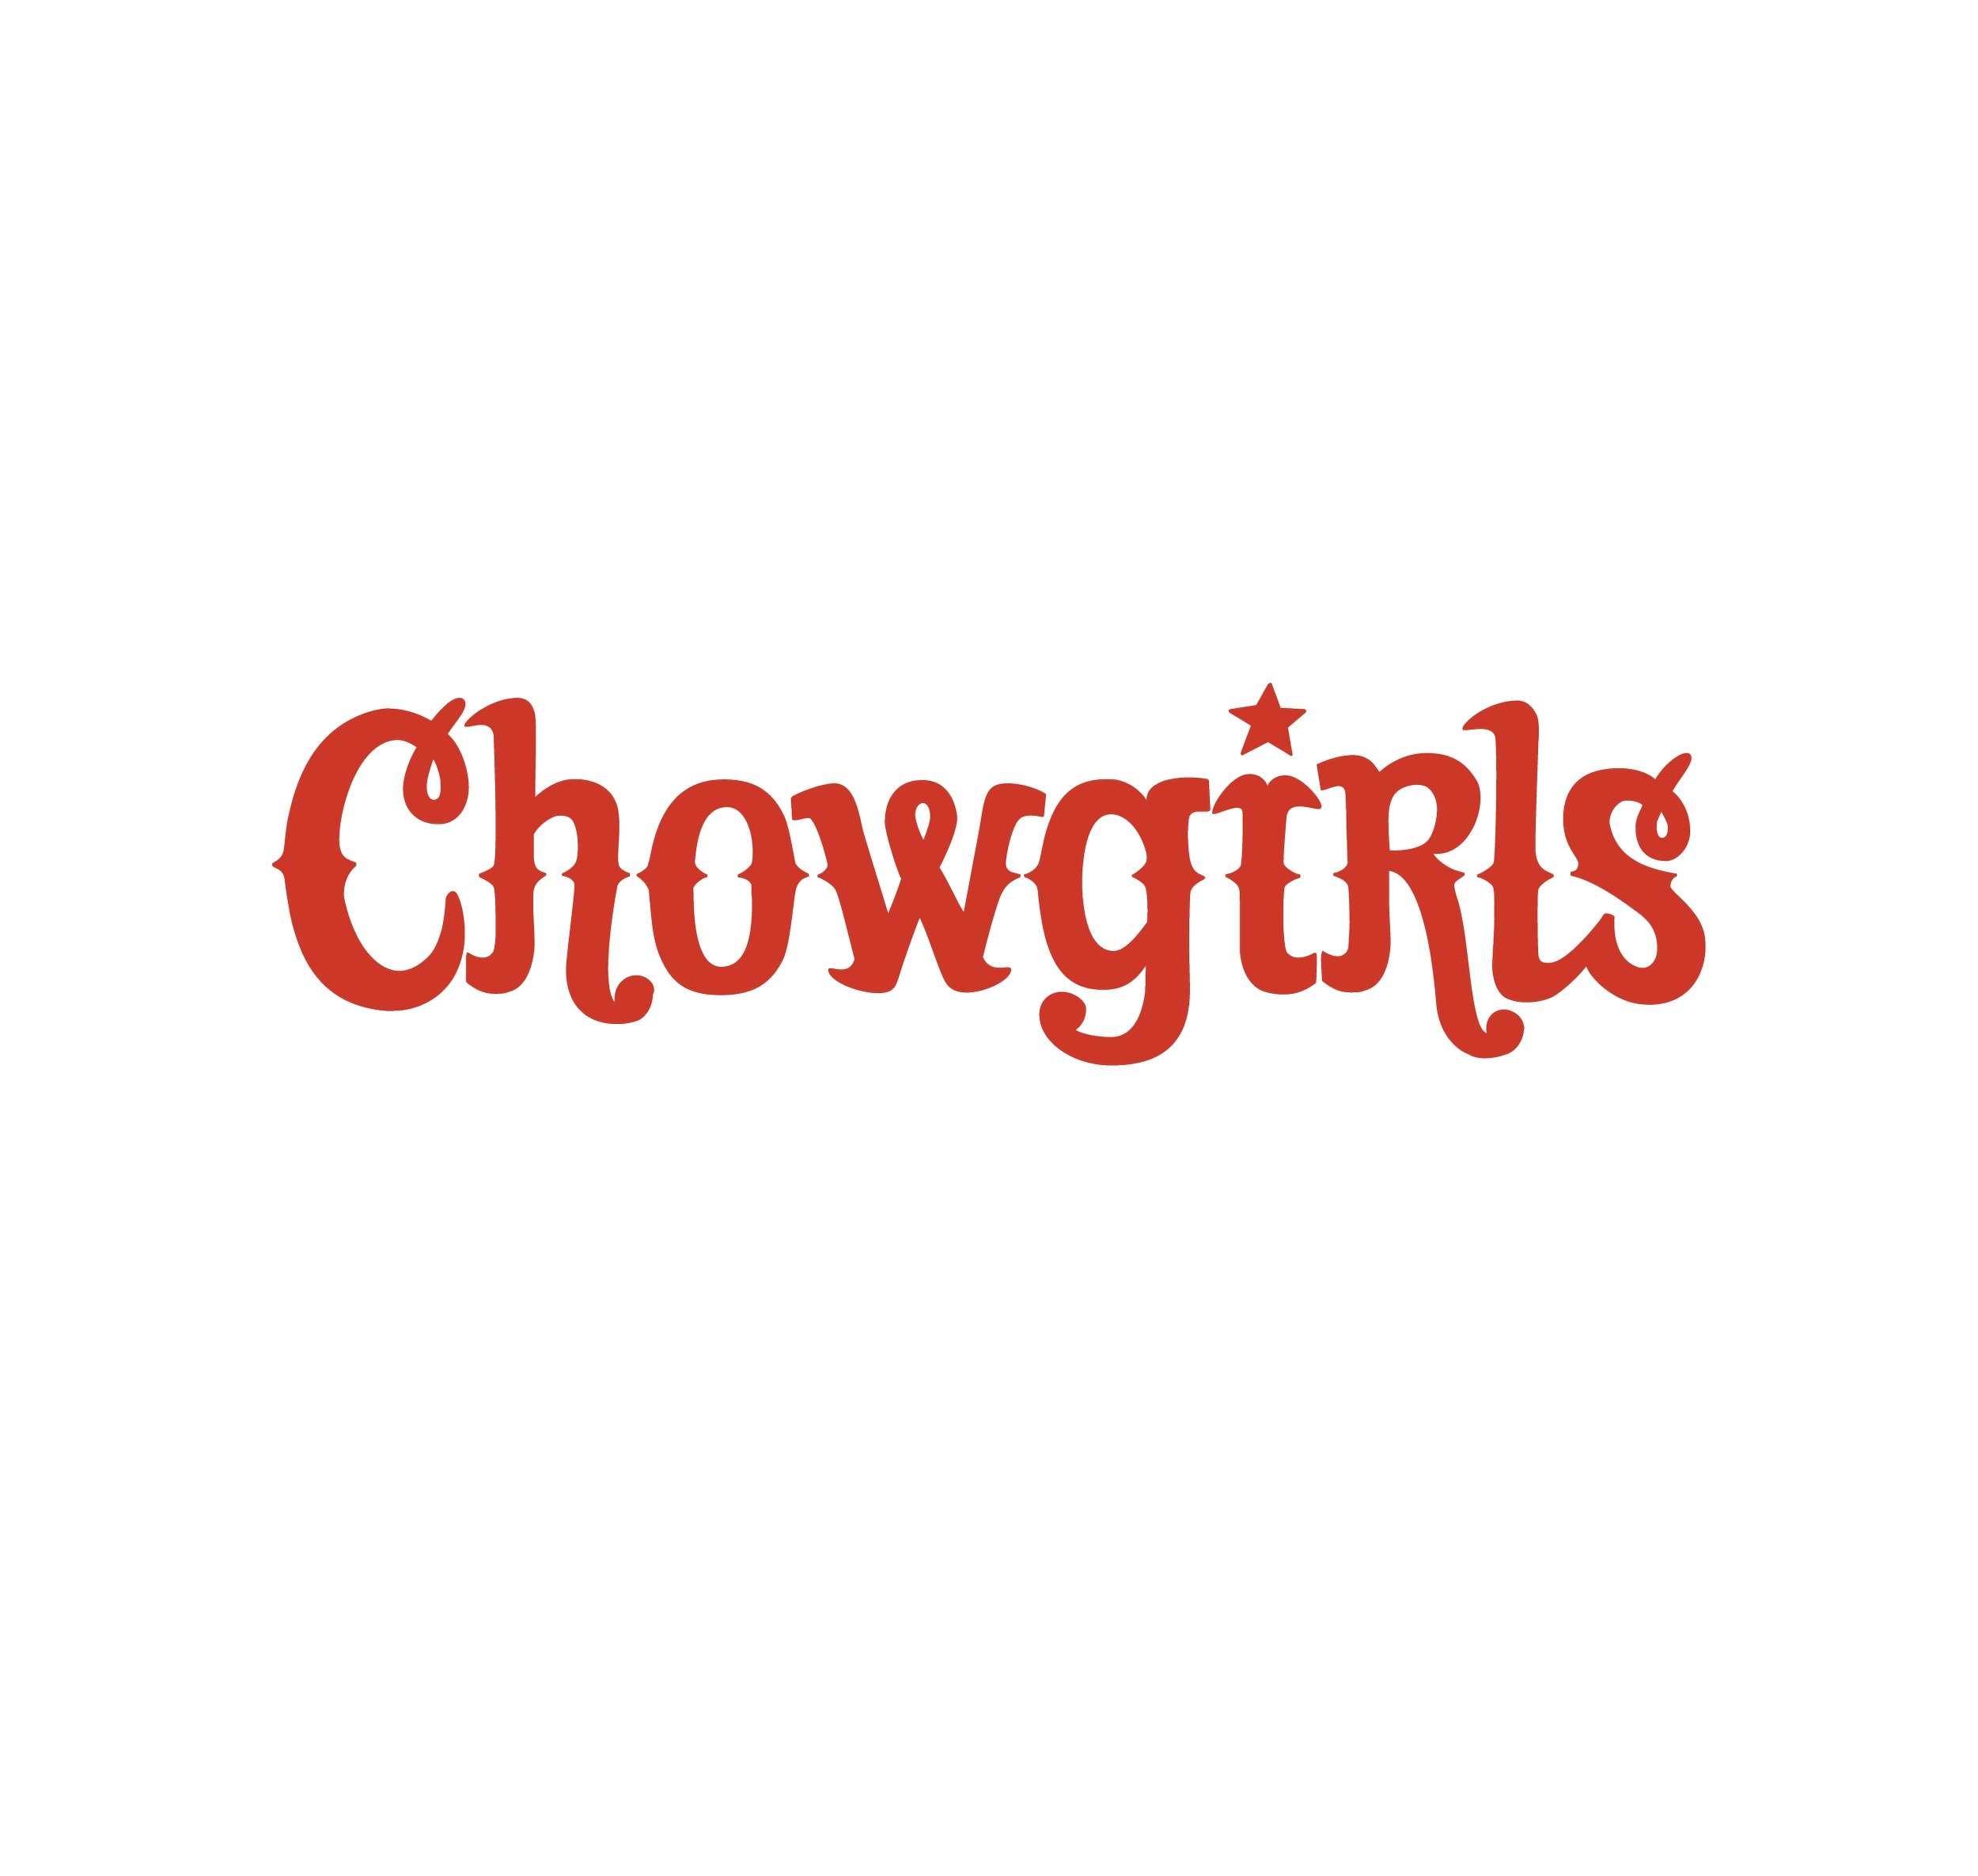 Chowgirls.jpg